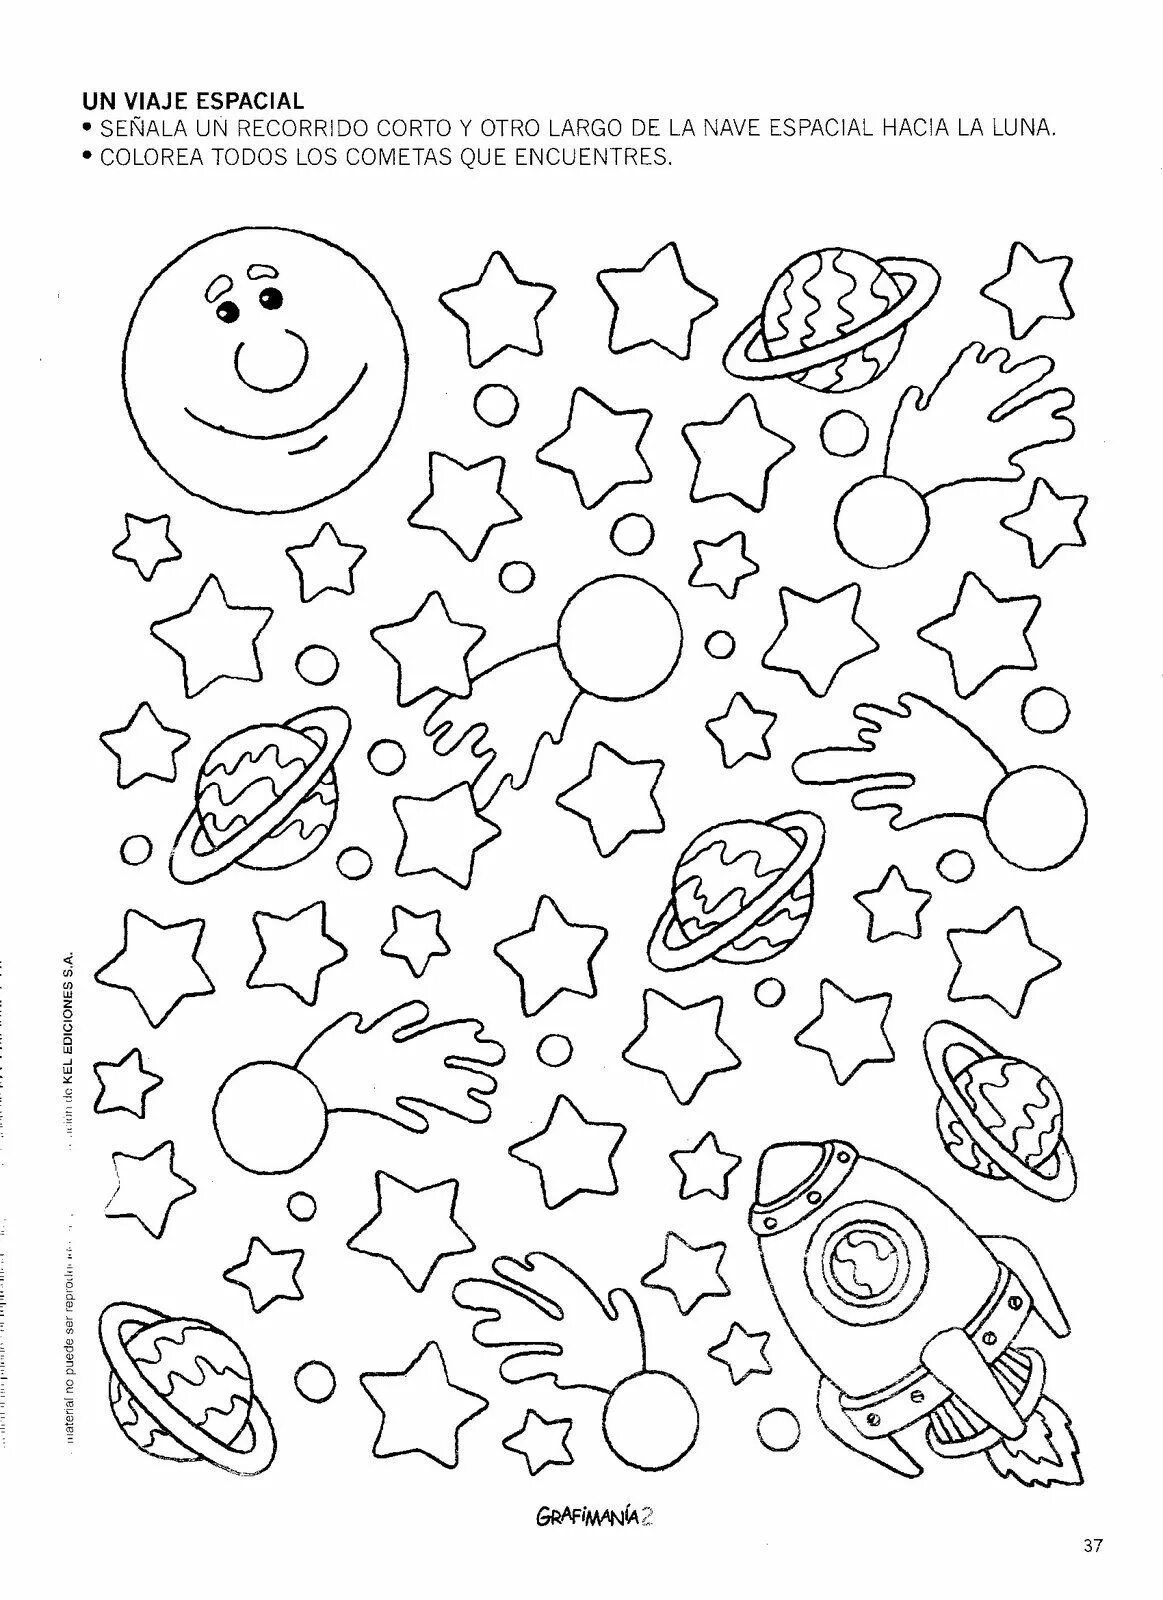 Космос задания для детей. Космос задания для дошкольников. Занание про космос для дошкольников. Космонавтика задания для дошкольников.